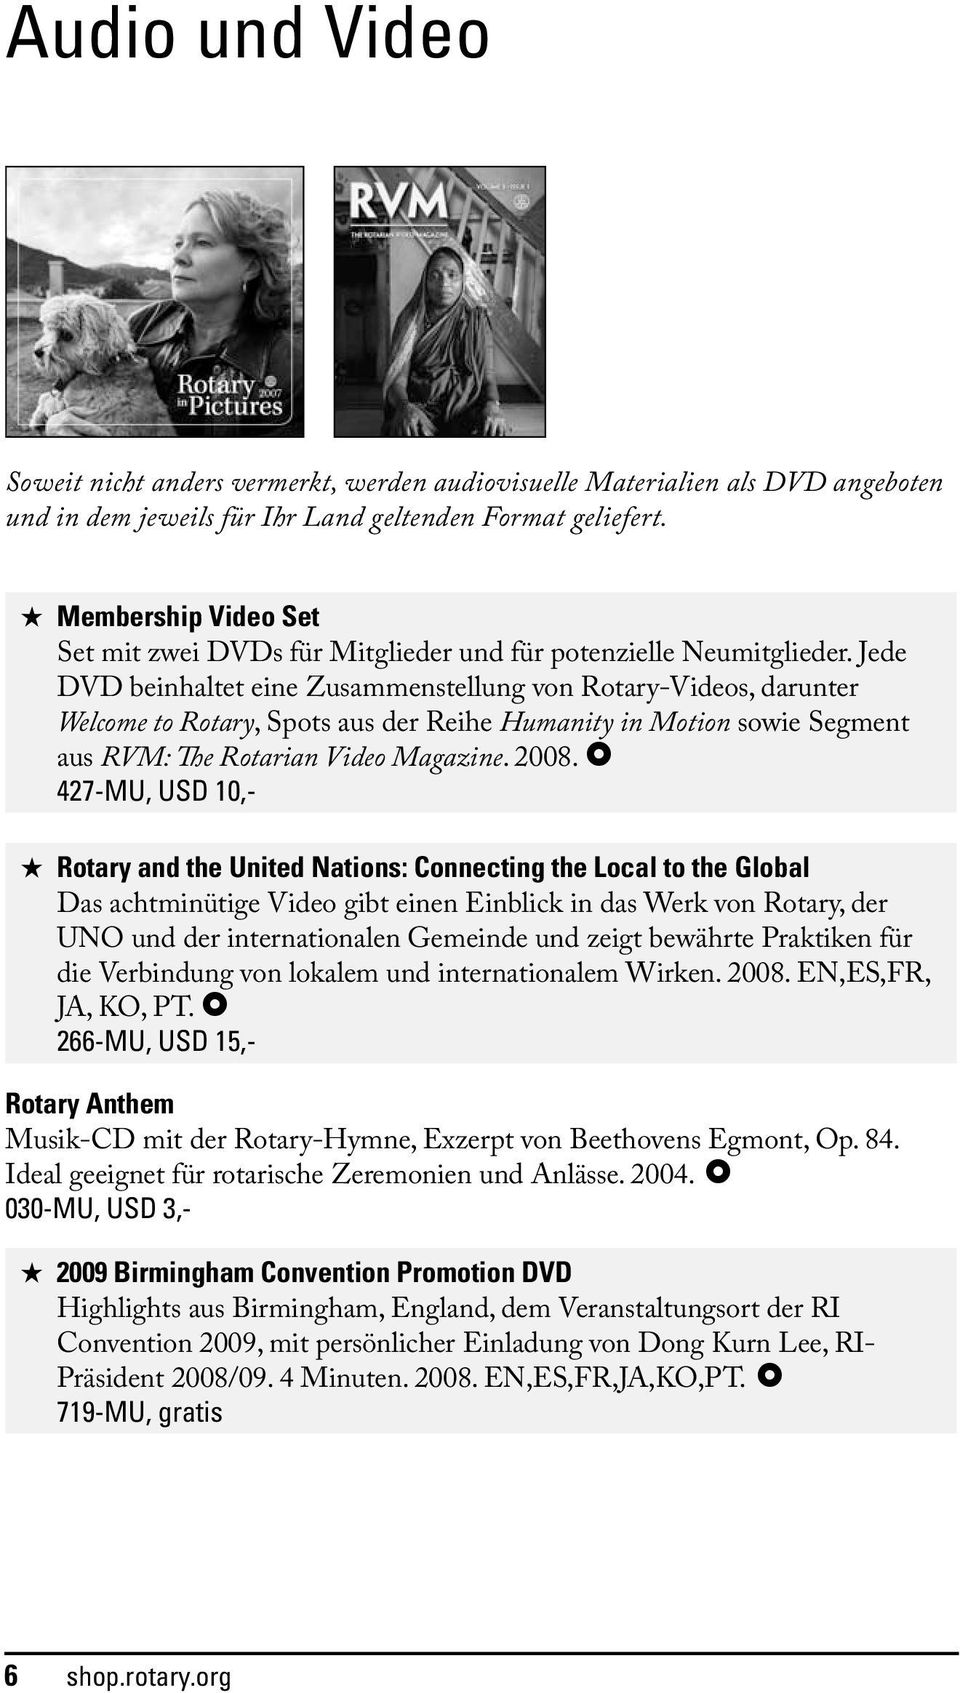 Jede DVD beinhaltet eine Zusammenstellung von Rotary-Videos, darunter Welcome to Rotary, Spots aus der Reihe Humanity in Motion sowie Segment aus RVM: The Rotarian Video Magazine. 2008.